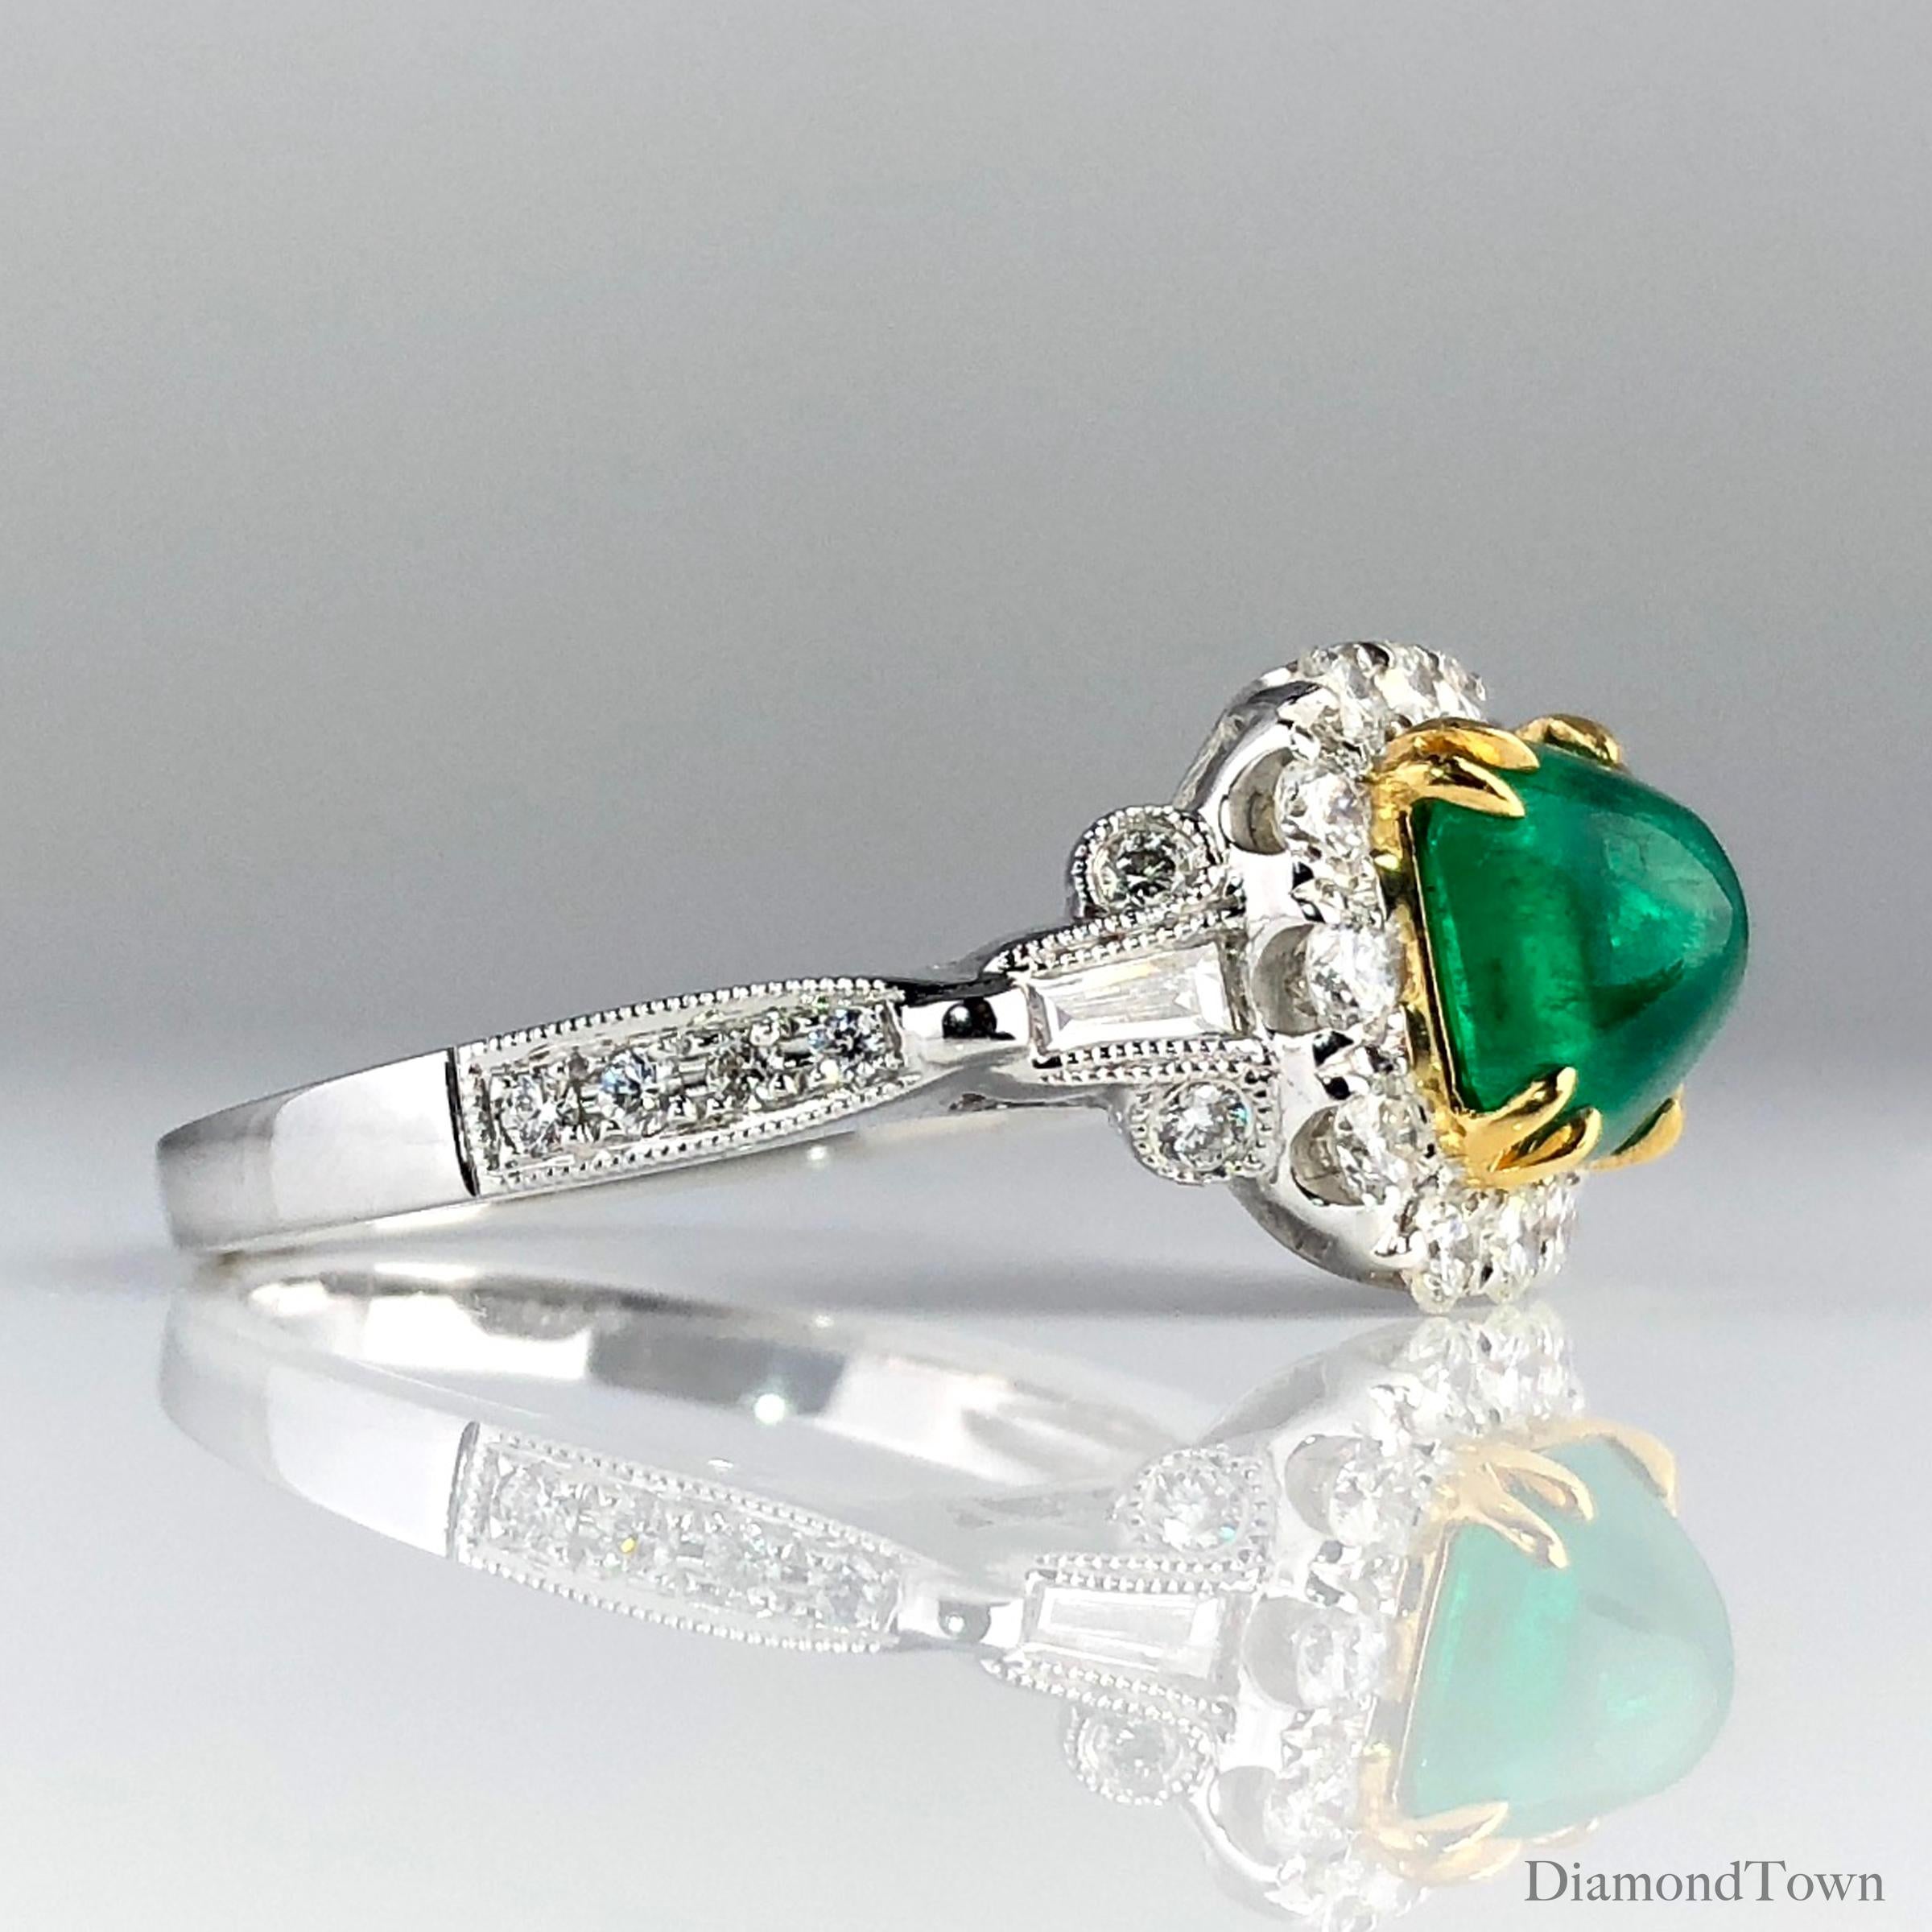 (DiamondTown) Dieser Ring zeigt einen 1,45 Karat schweren Zuckerhut-Smaragd in der Mitte, umgeben von einem quadratischen Halo aus runden weißen Diamanten. Zwei spitz zulaufende Baguettes und weitere runde Diamanten führen den seitlichen Schaft